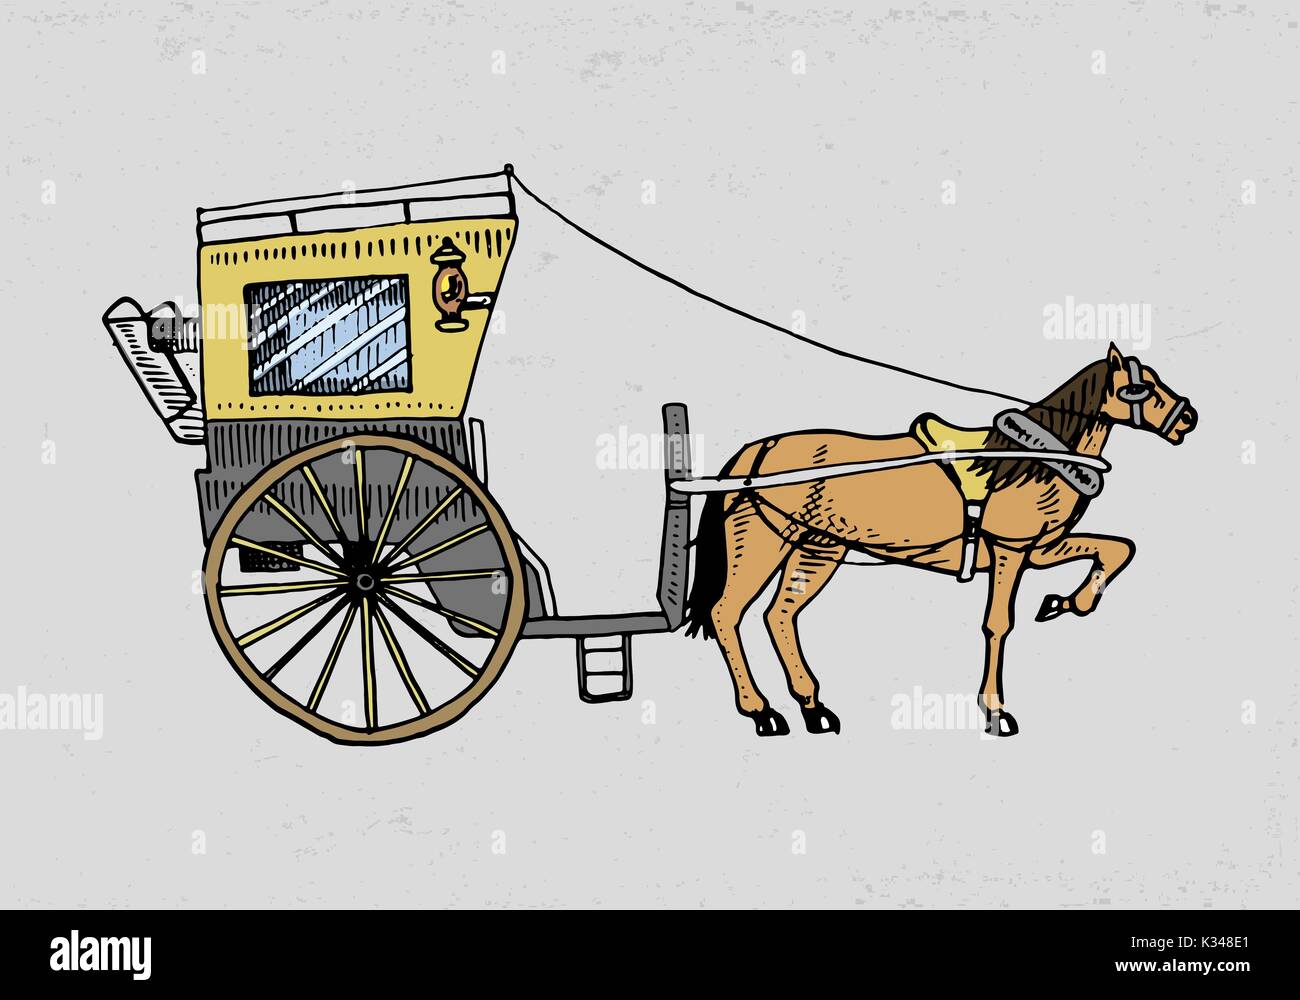 Pferdewagen oder Trainer. Reisen Abbildung. graviert Hand in alte Skizze Stil gezeichnet, vintage Transport. Stock Vektor